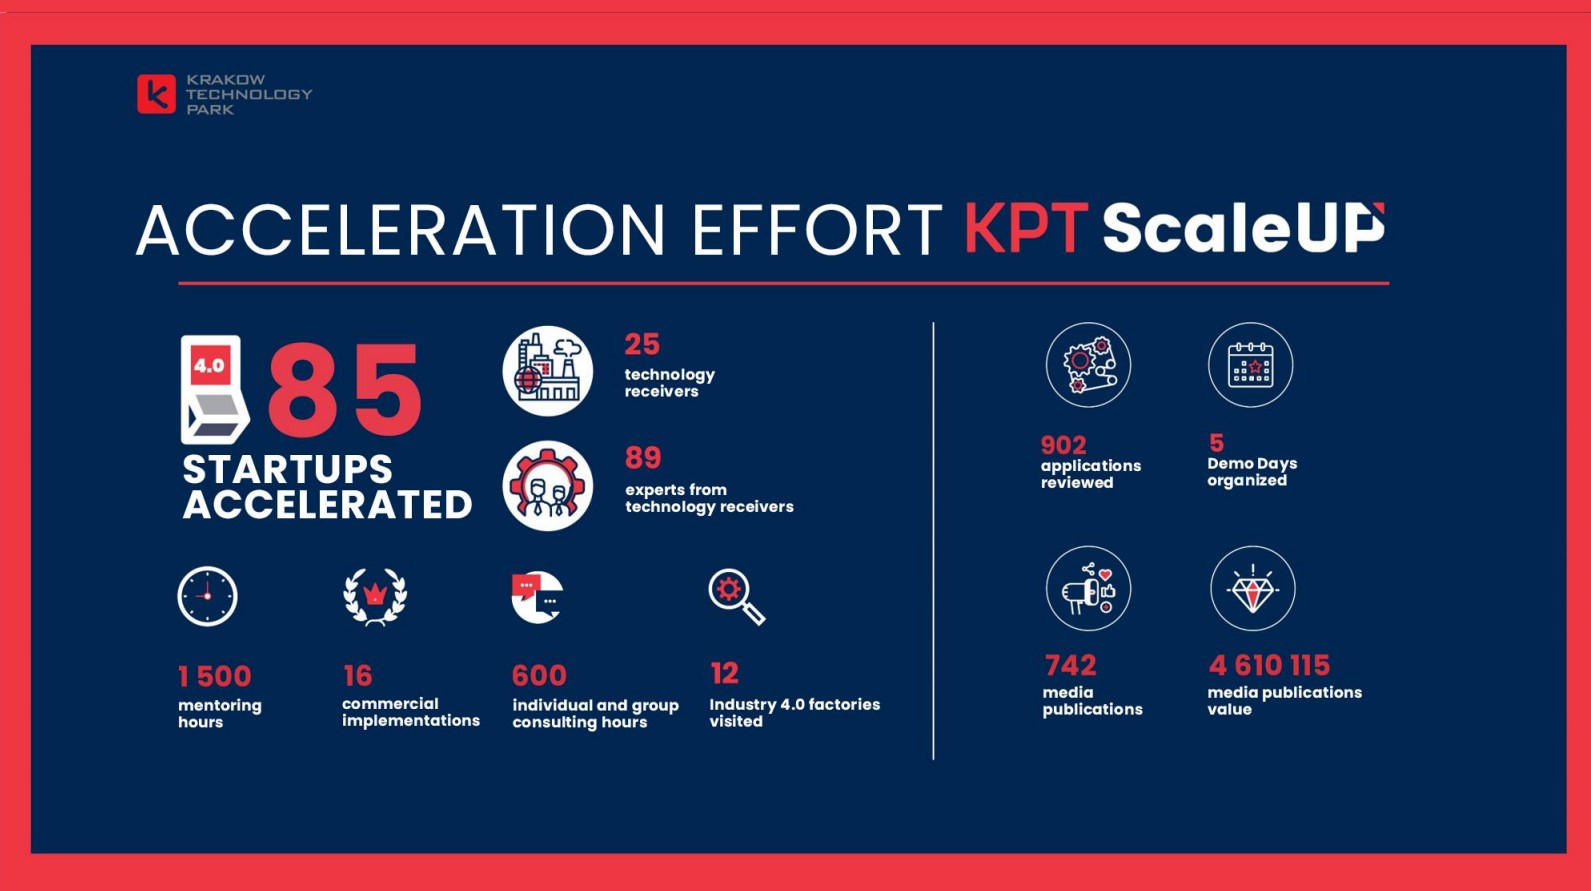 KPT ScaleUp Effort